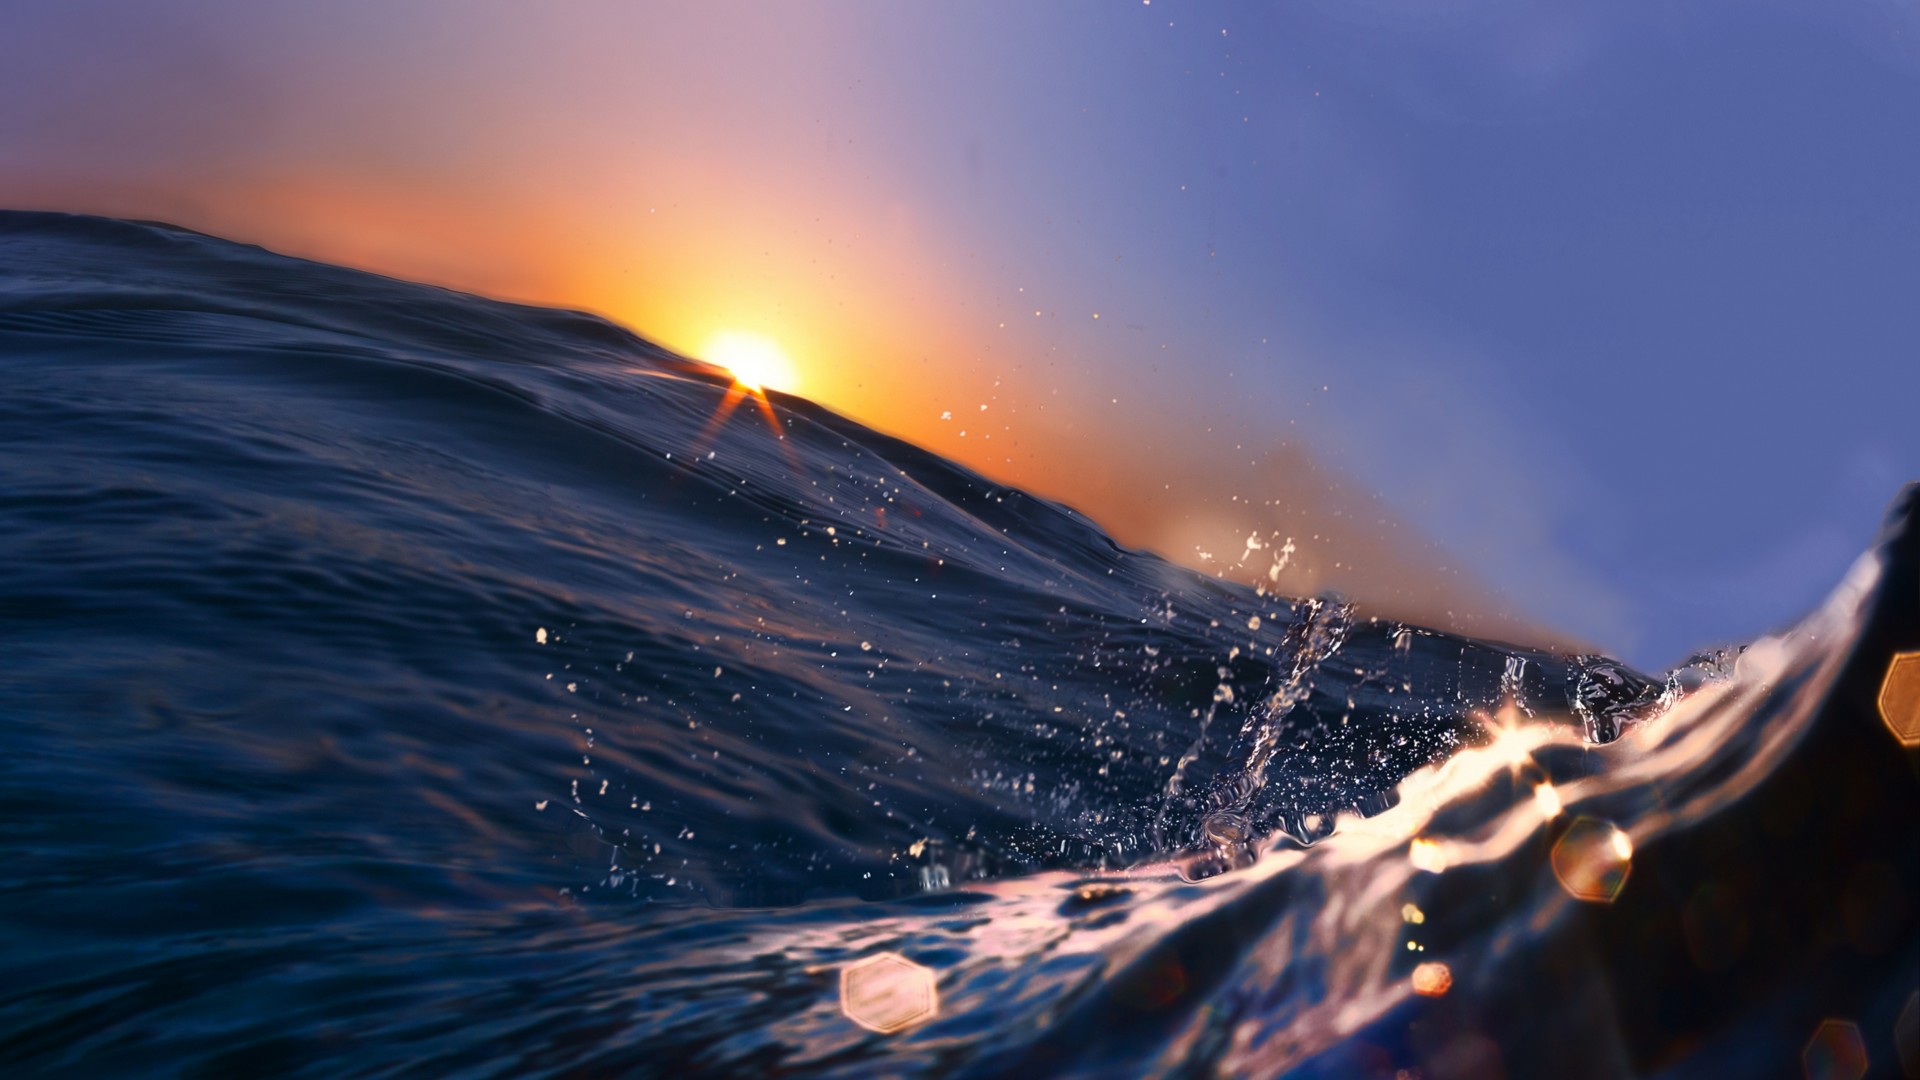 Sea, 5k, 4k wallpaper, 8k, Ocean, Water, sunset, sunrise, blue, rays (horizontal)